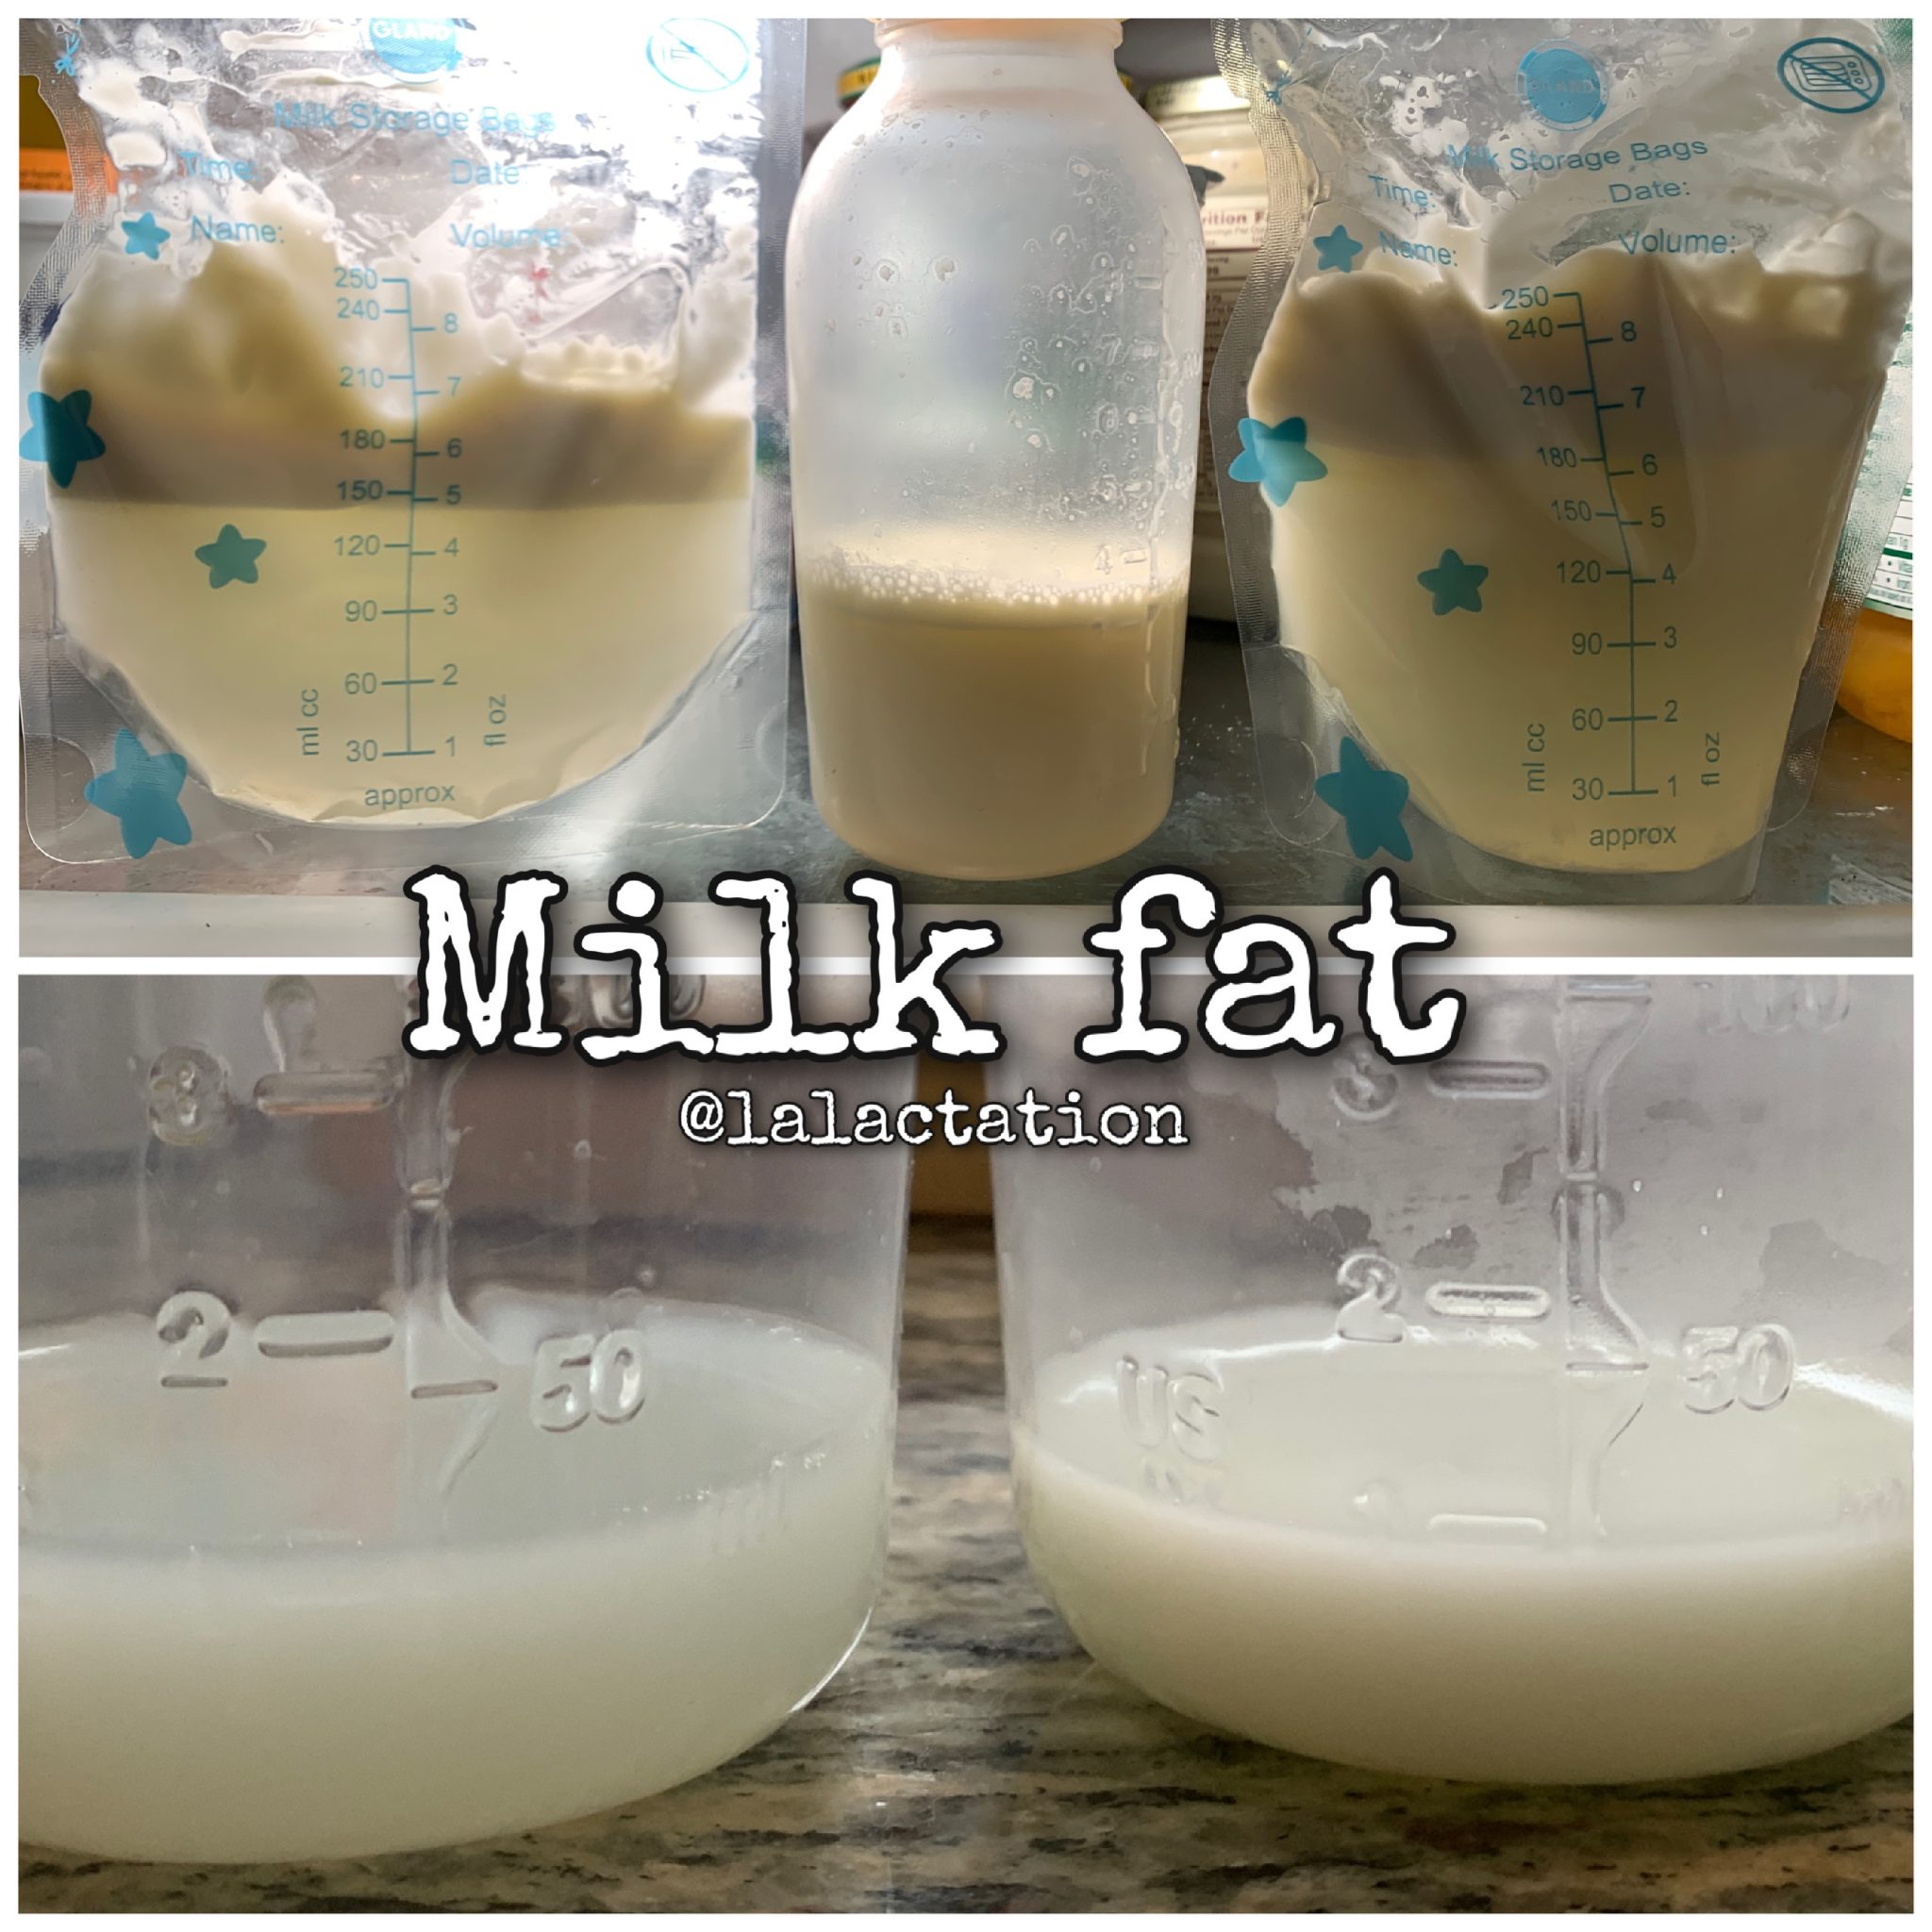 Human milk fat LA Lactation, LLC